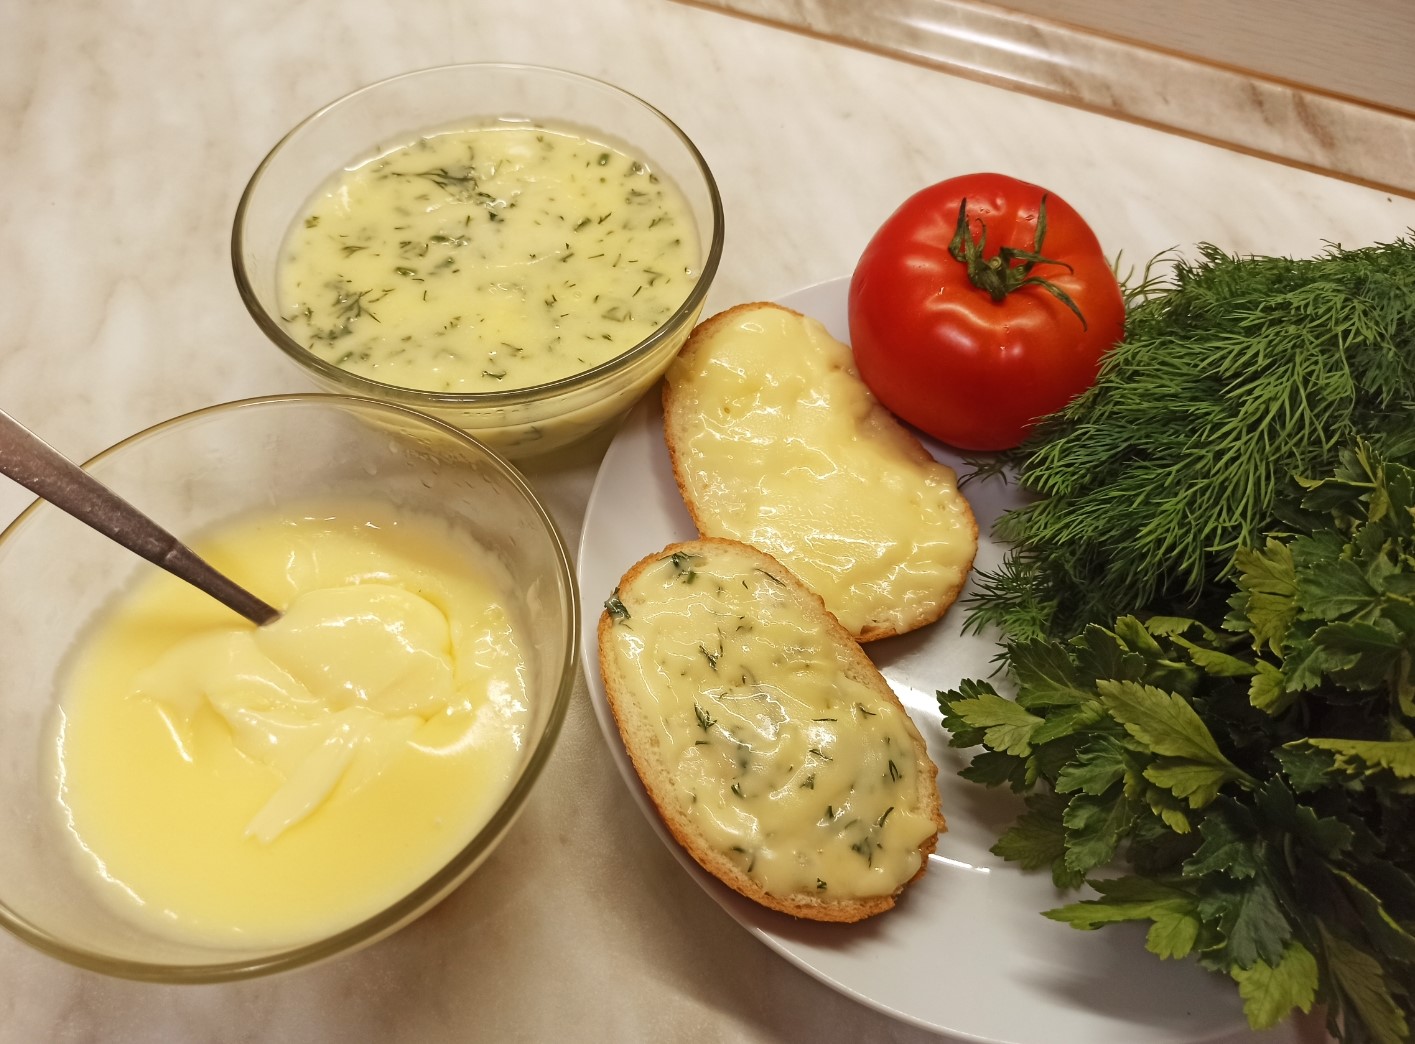 Домашний плавленный сыр